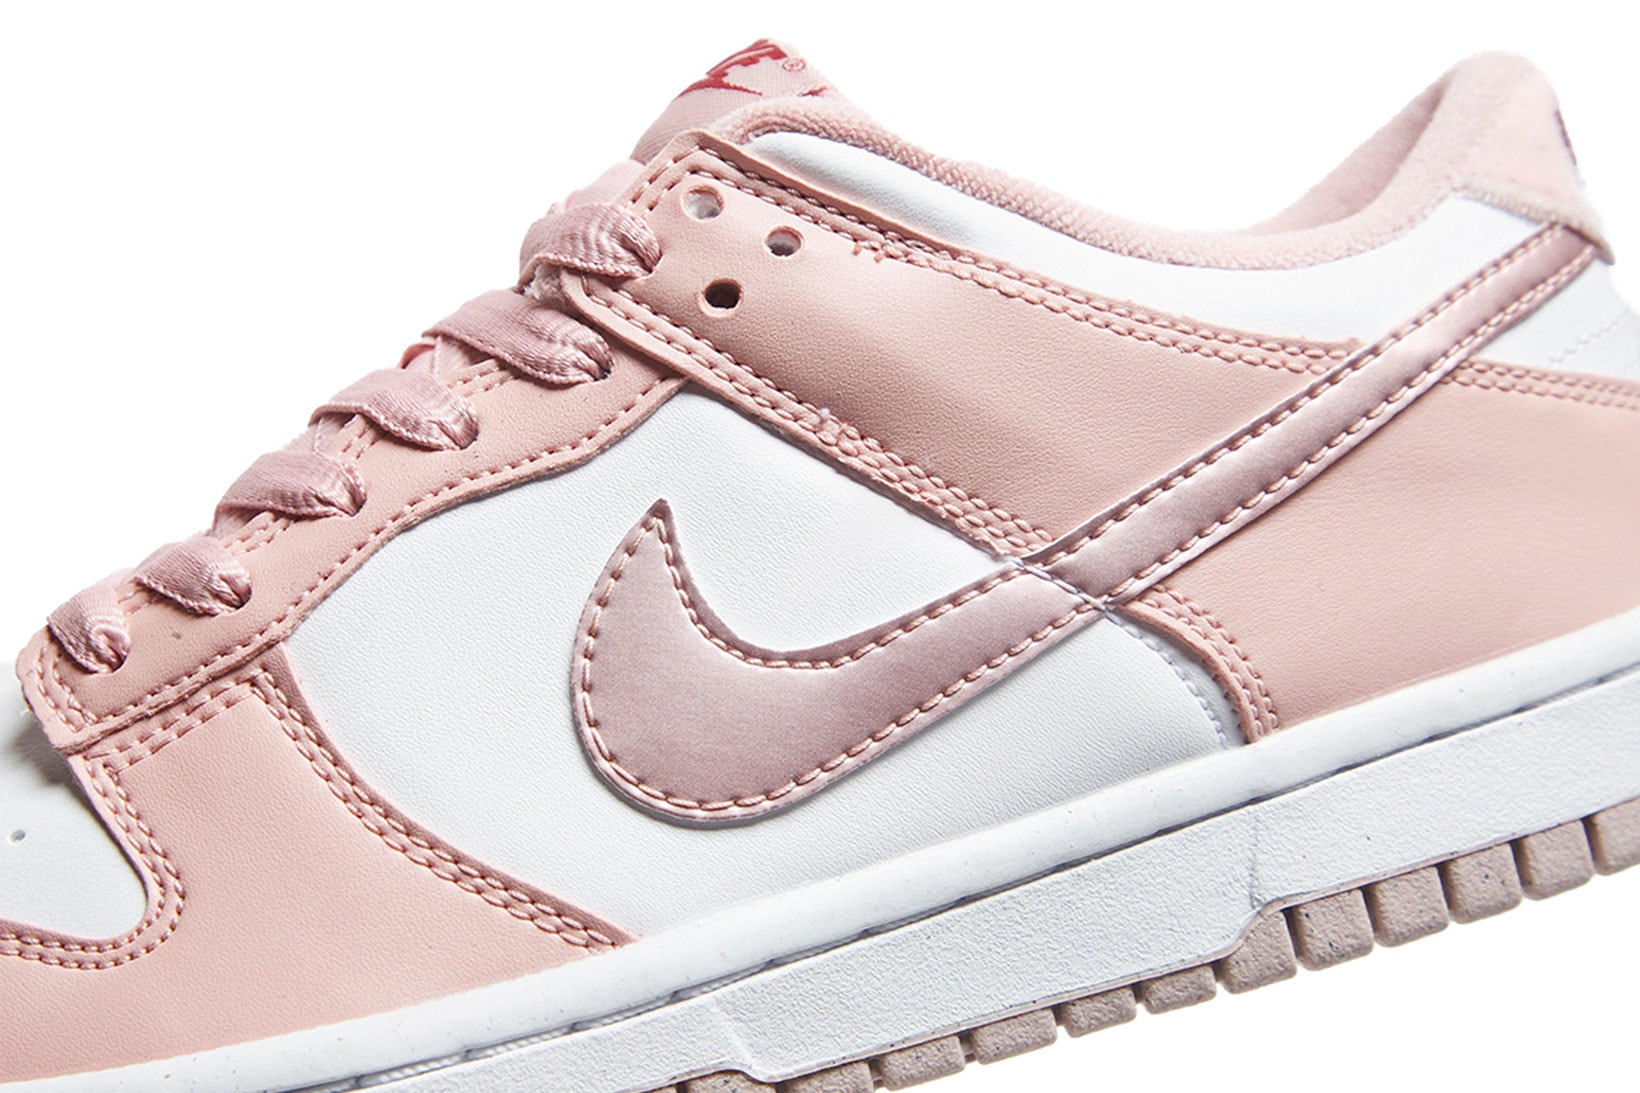 Nike dunk low Pink Velvet Pastel Sneakers Girls GS Sizing